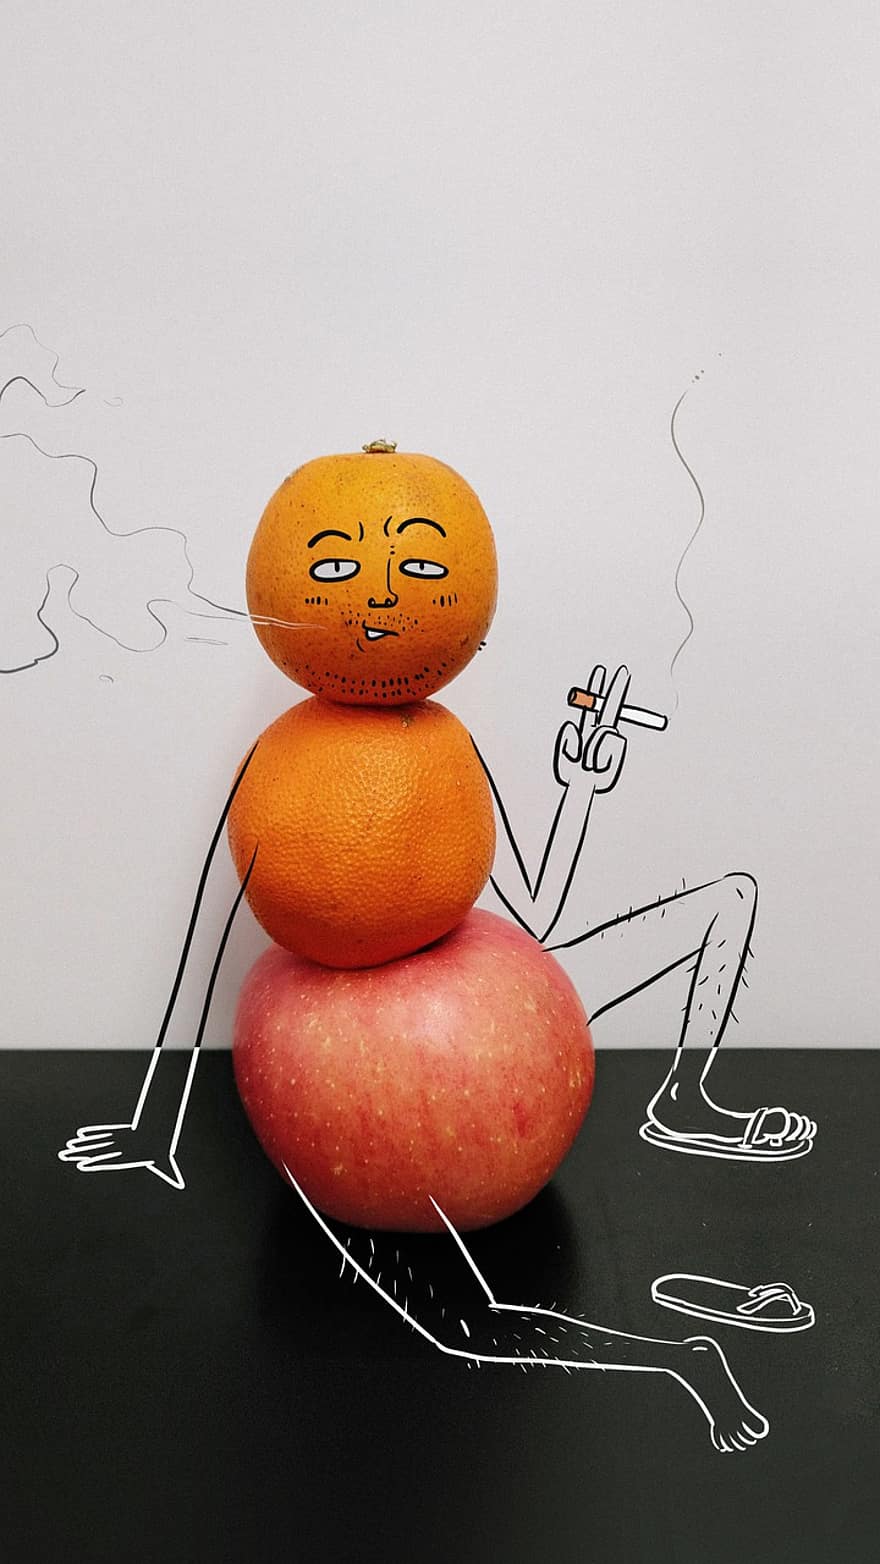 ζωγραφική, δημιουργικότητα, καρπός, μήλο, πορτοκάλι, παρηκμασμένος, κάπνισμα, μέση ηλικία